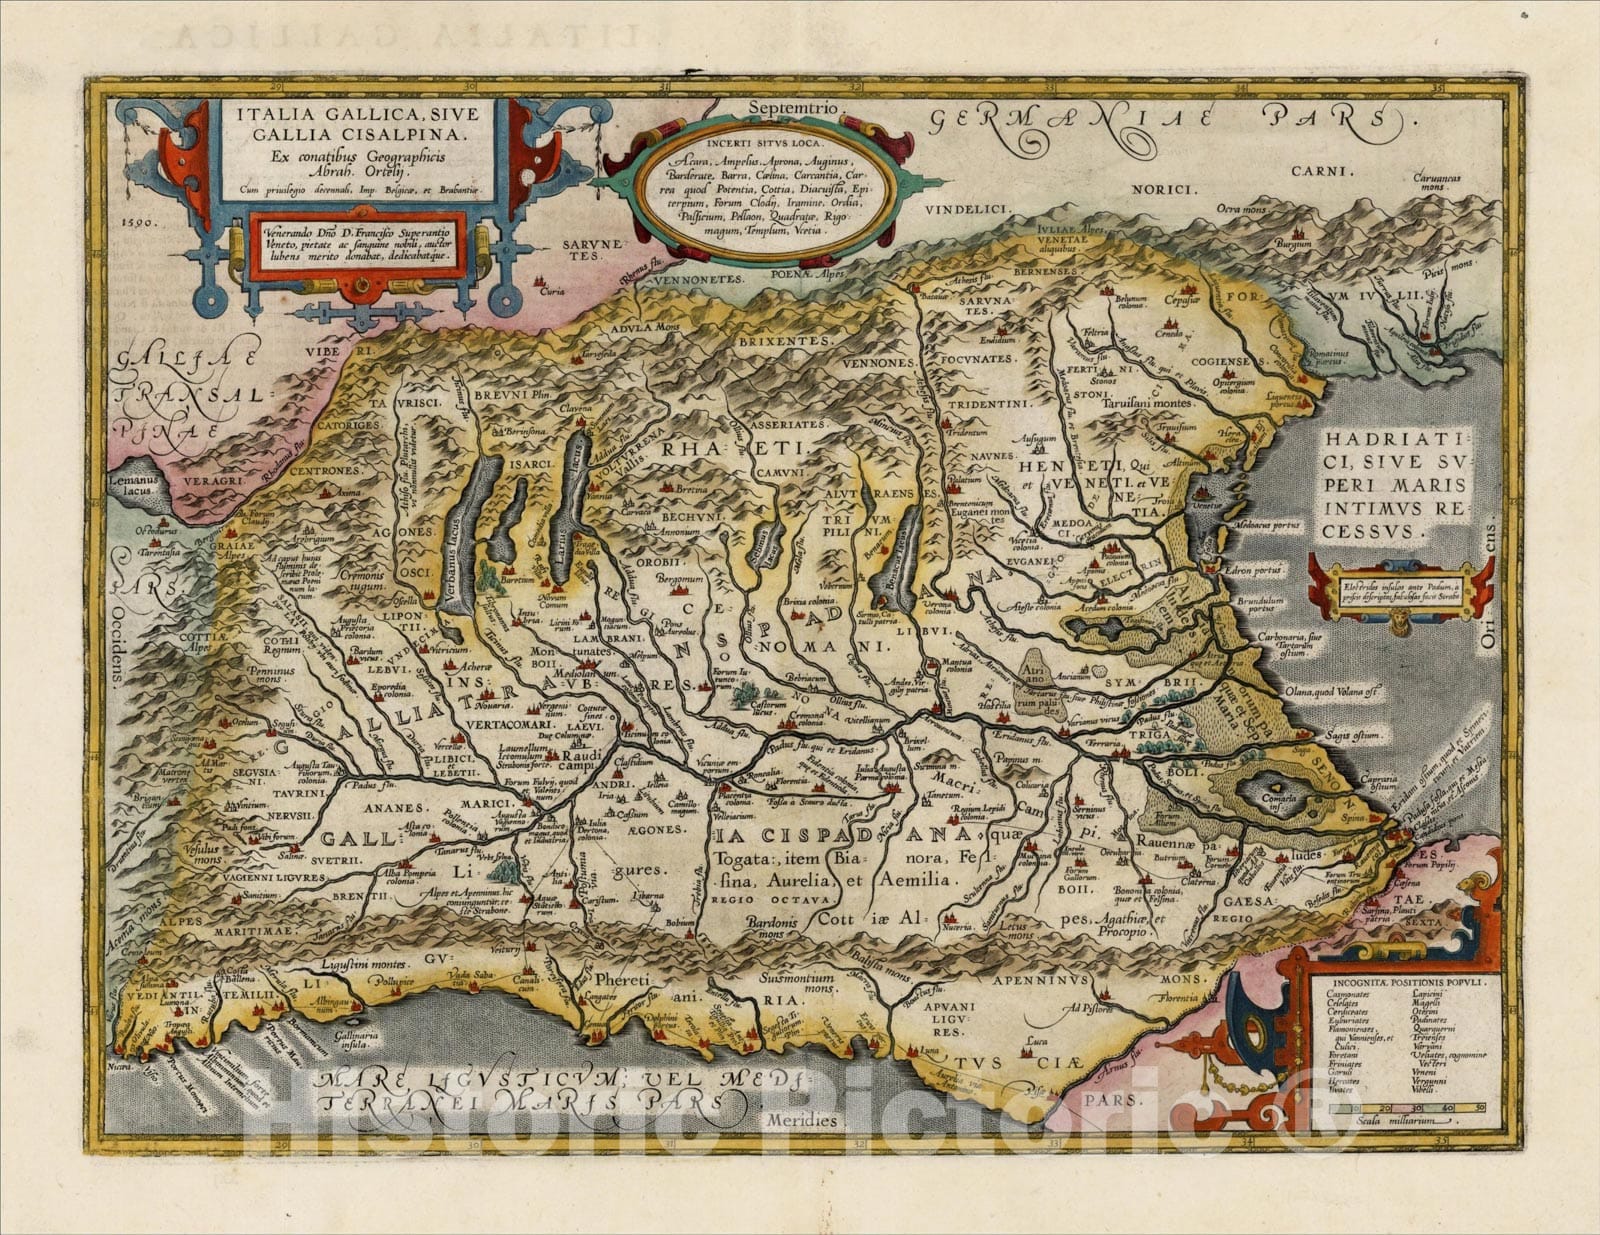 Historic Map : Italia Gallica, Sive Gallia Cisalpina, Ex conatibus Geographicis Abrah. Ortelij, 1608, , Vintage Wall Art